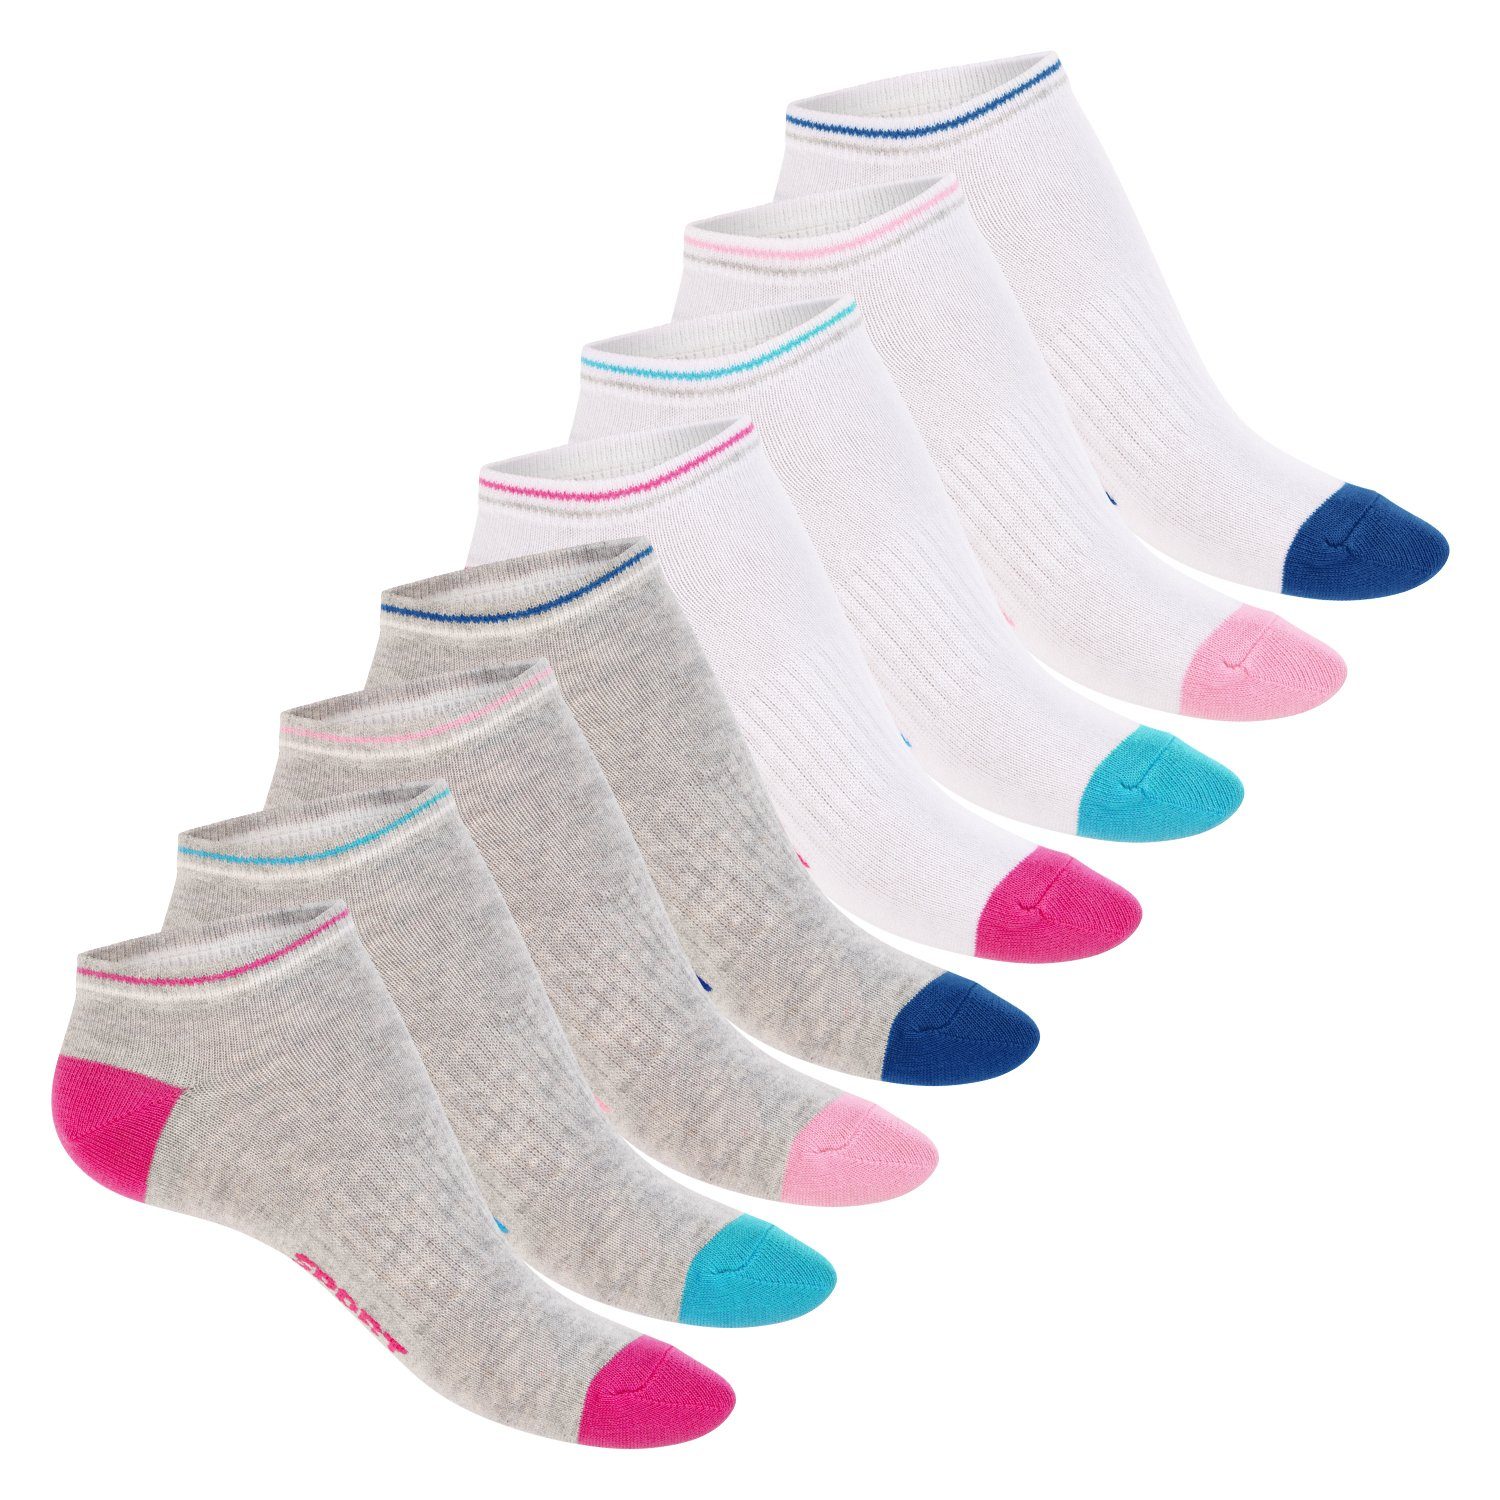 Footstar Sneakersocken süße Damen Sneaker Grau-Multicolor Socken (8 Kurze mit Söckchen Paar) Muster